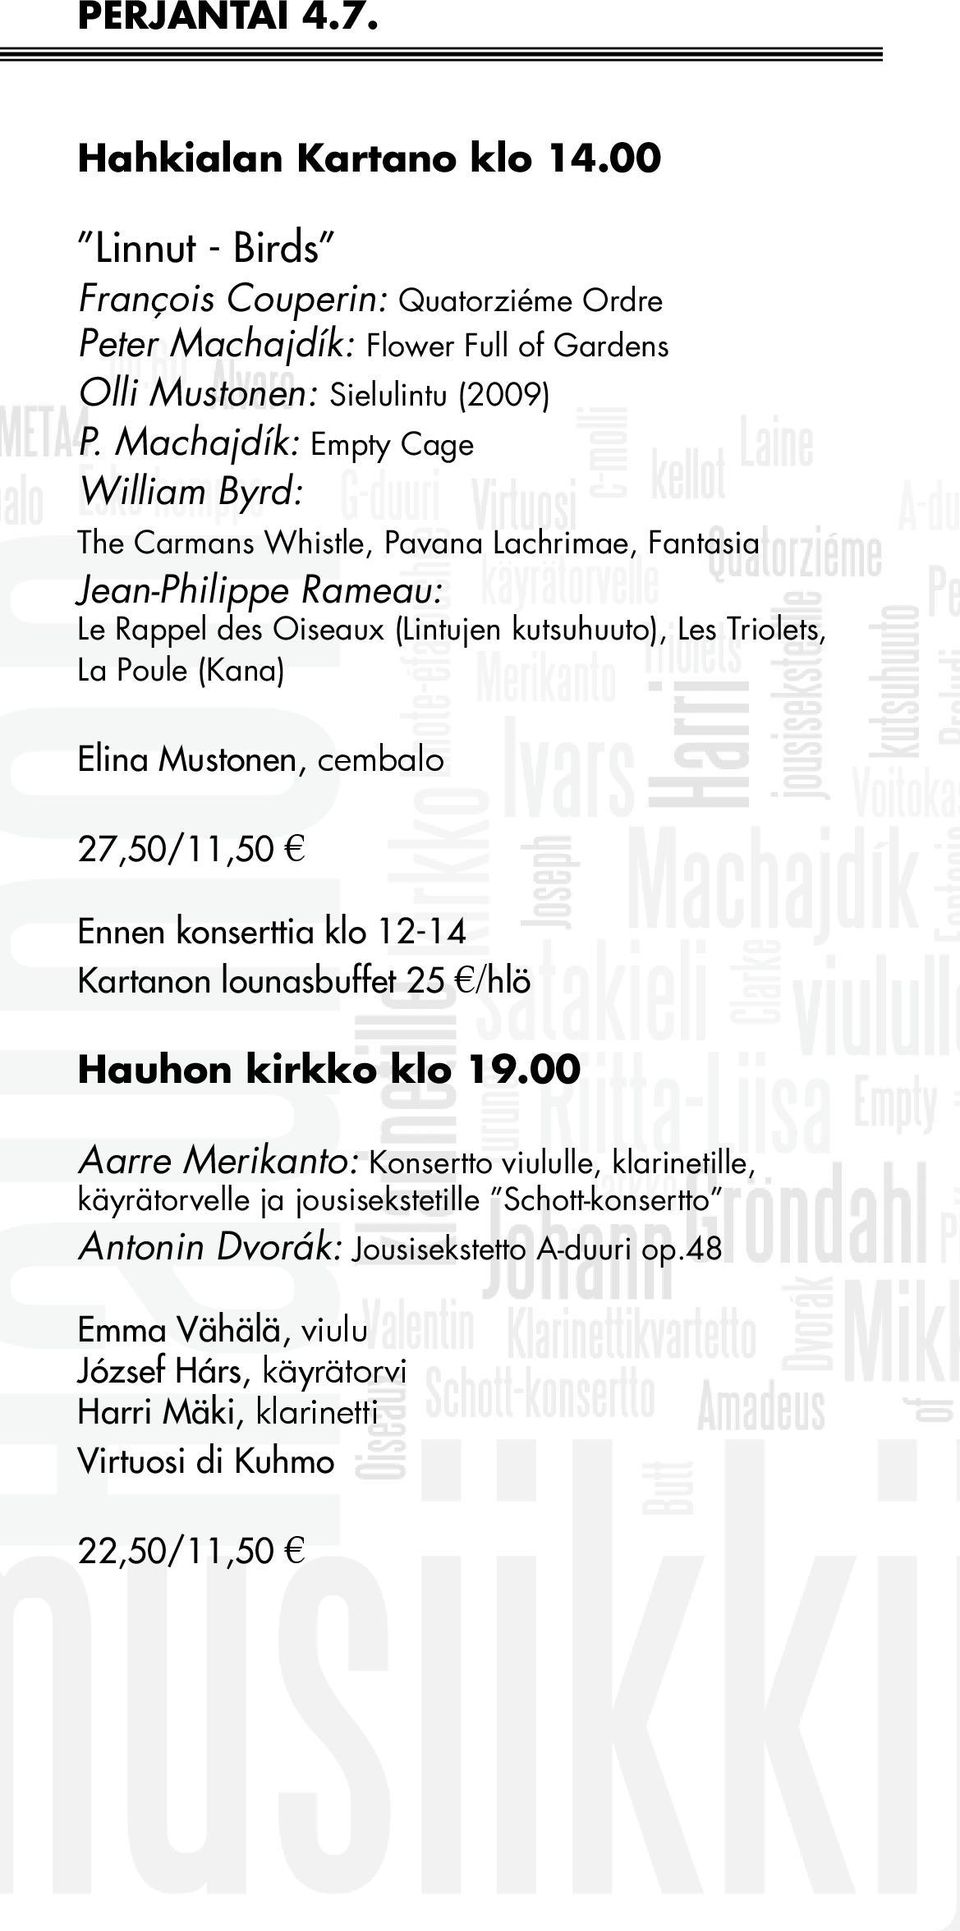 (Kana) Elina Mustonen, cembalo 27,50/11,50 Ennen konserttia klo 12-14 Kartanon lounasbuffet 25 /hlö Hauhon kirkko klo 19.